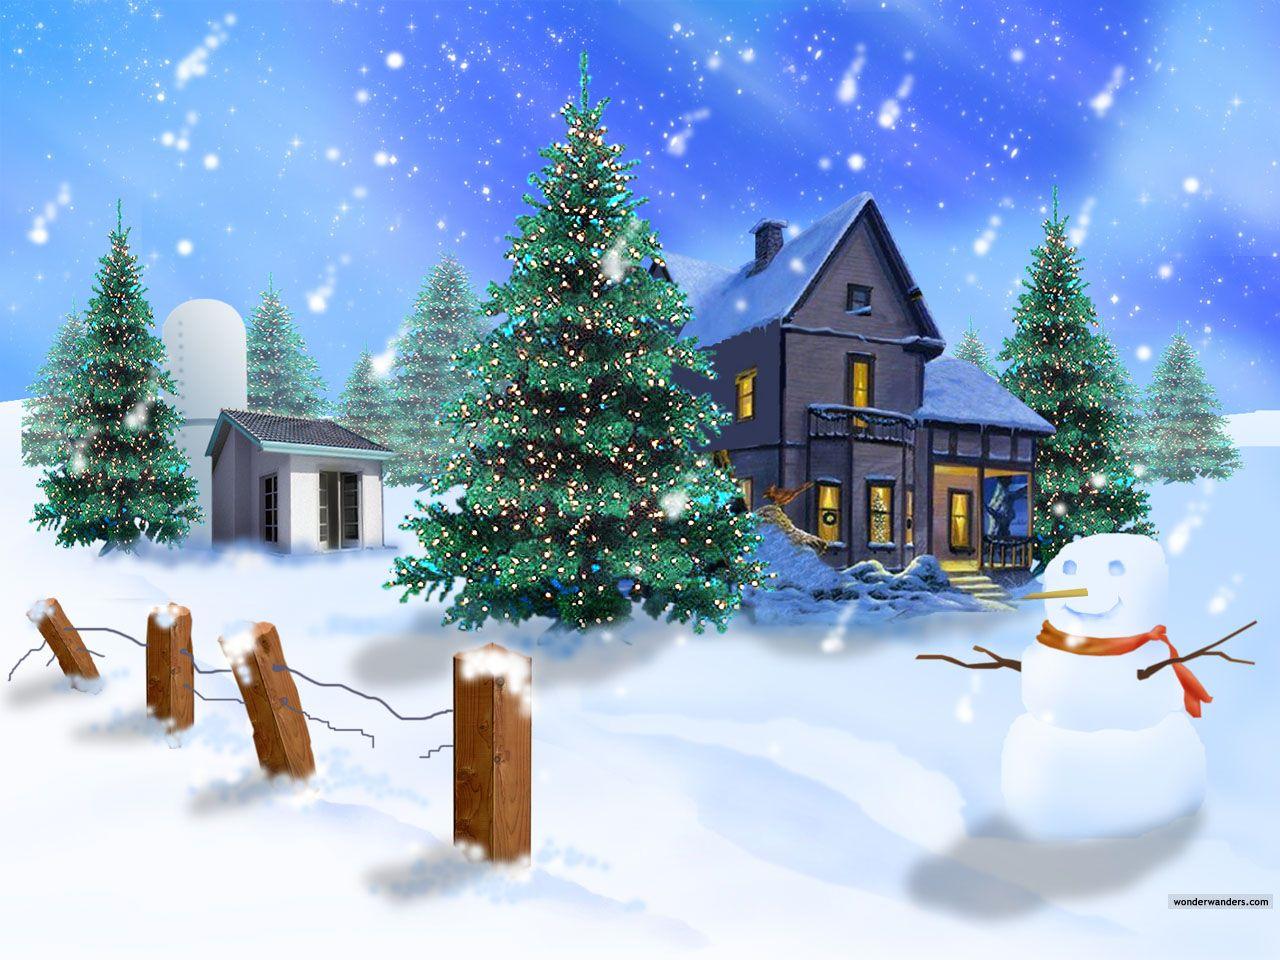 Best 3D Wallpaper For DesktopD Christmas Wallpaper HD. HD Wallpaper , Backg. Christmas desktop wallpaper, Merry christmas animation, Christmas wallpaper free